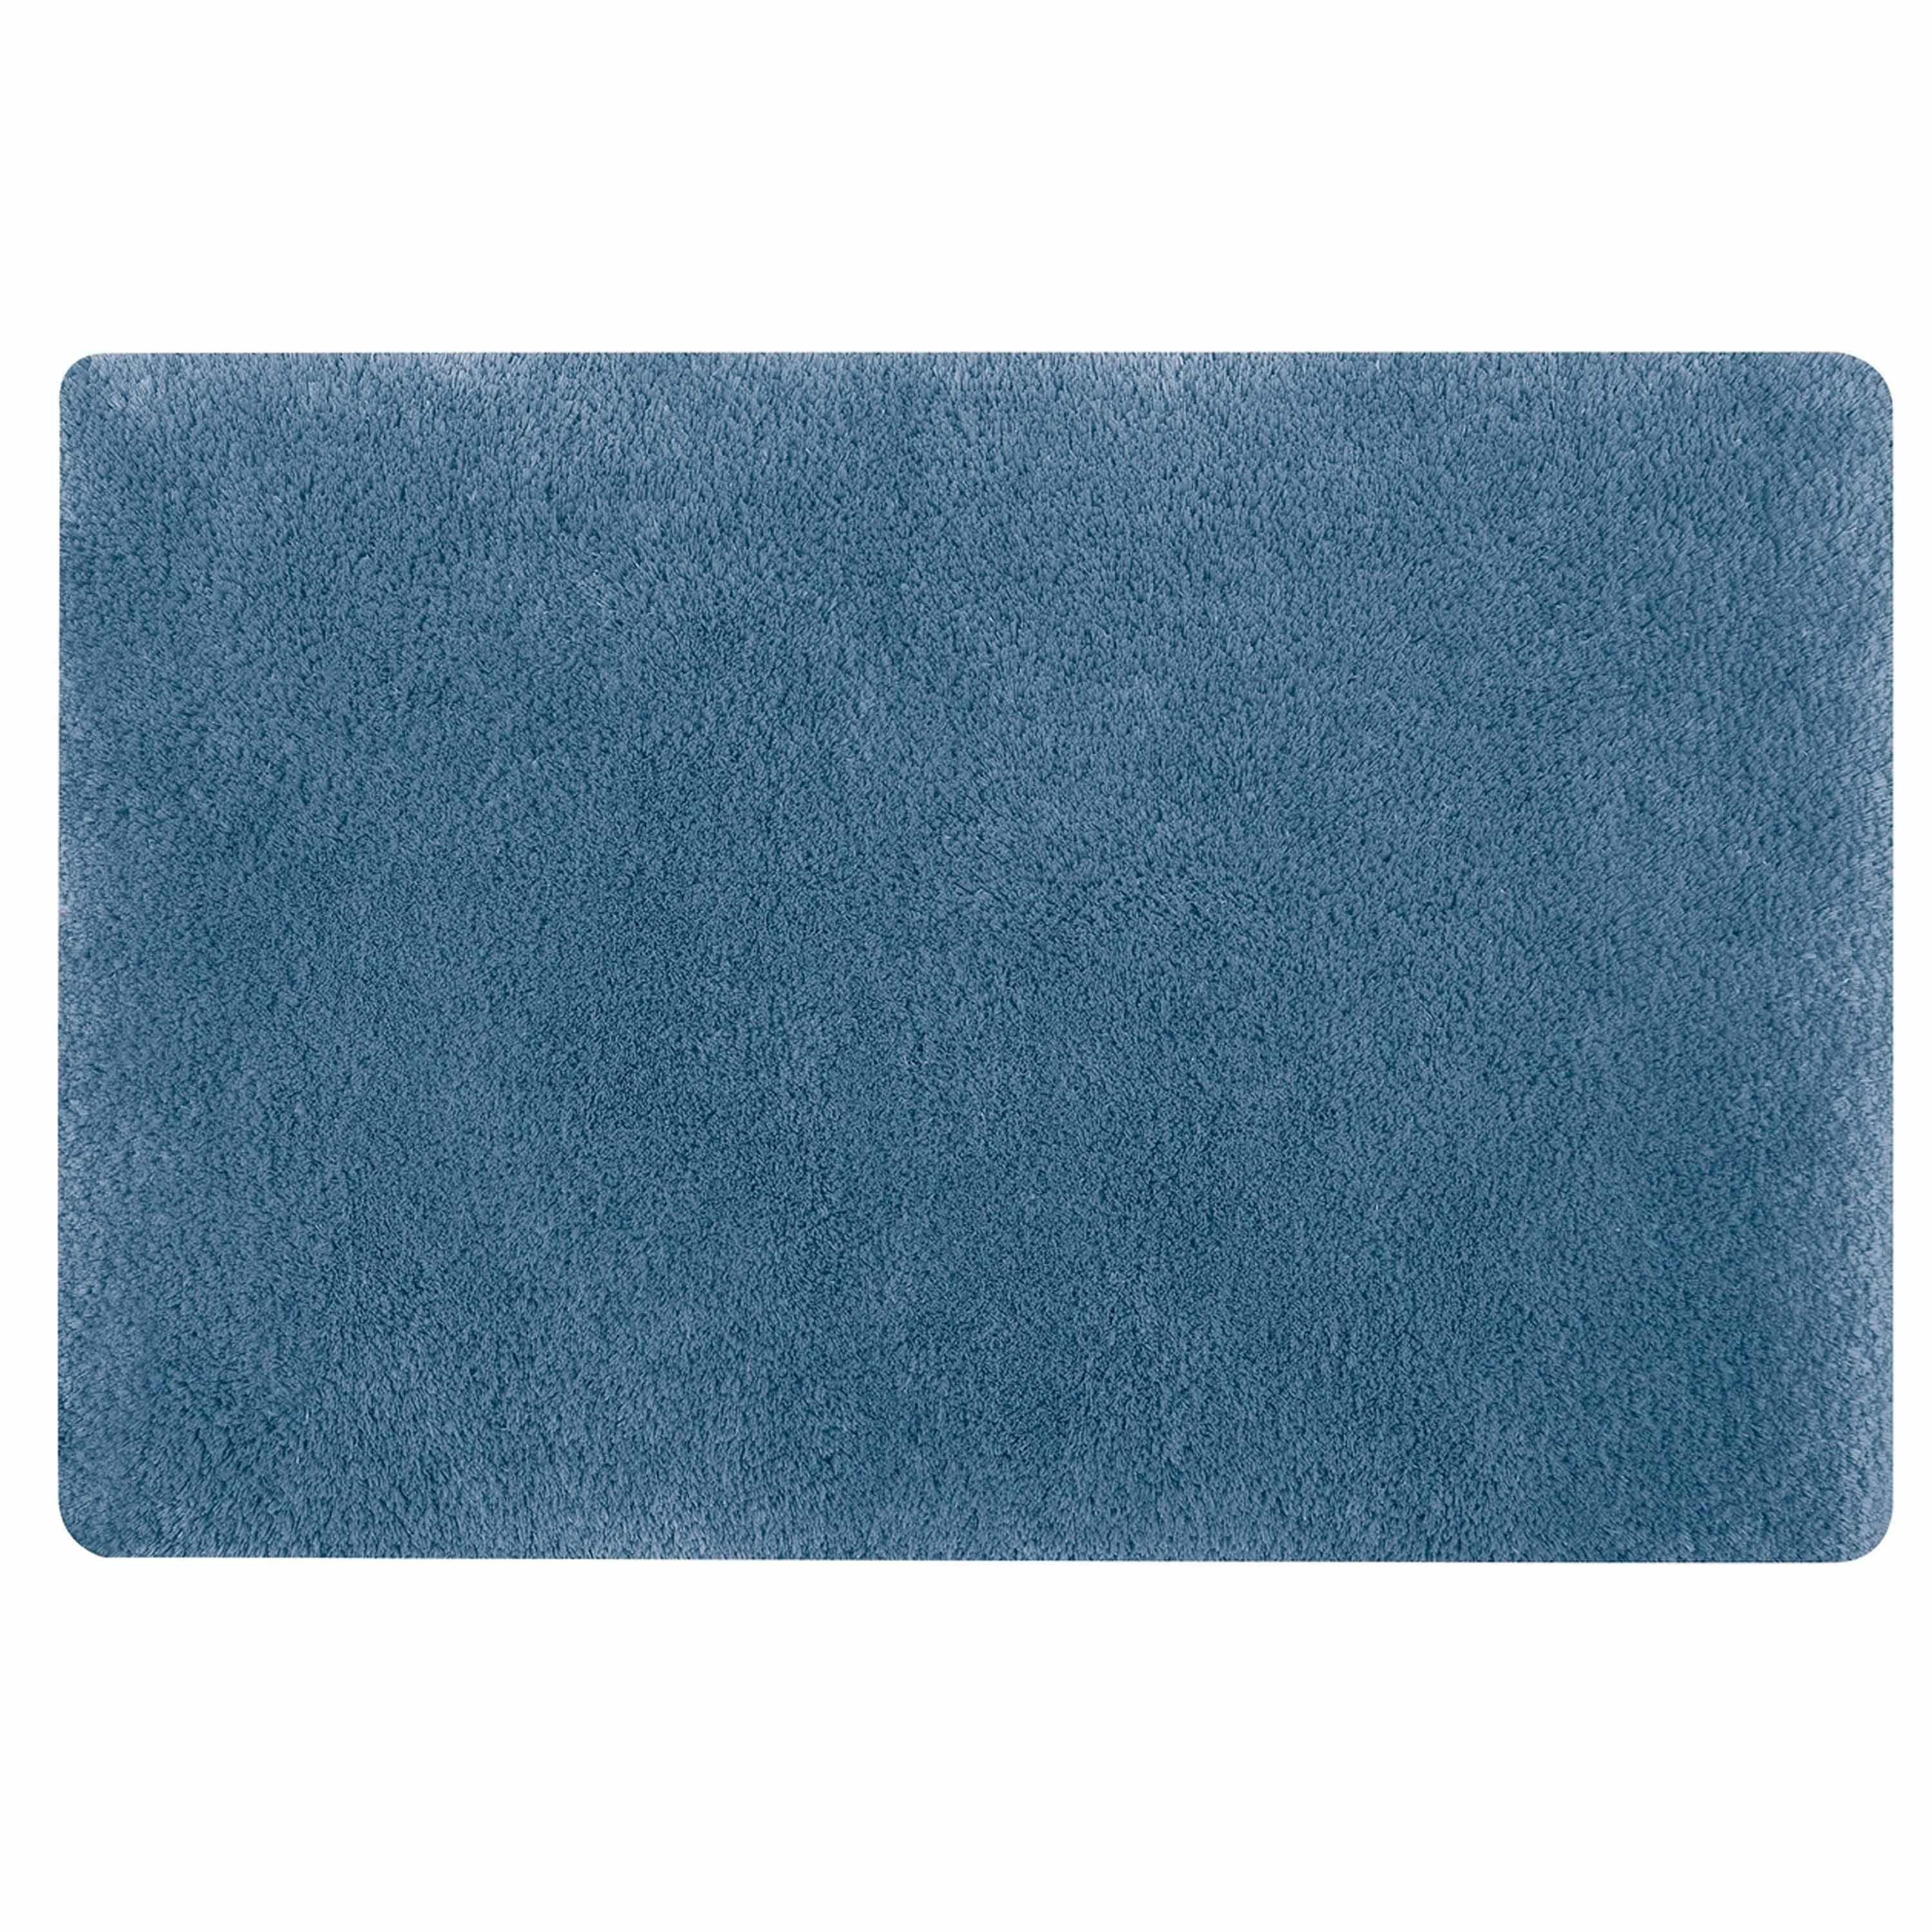 Spirella badkamer vloer kleedje-badmat tapijt hoogpolig en luxe uitvoering blauw 40 x 60 cm